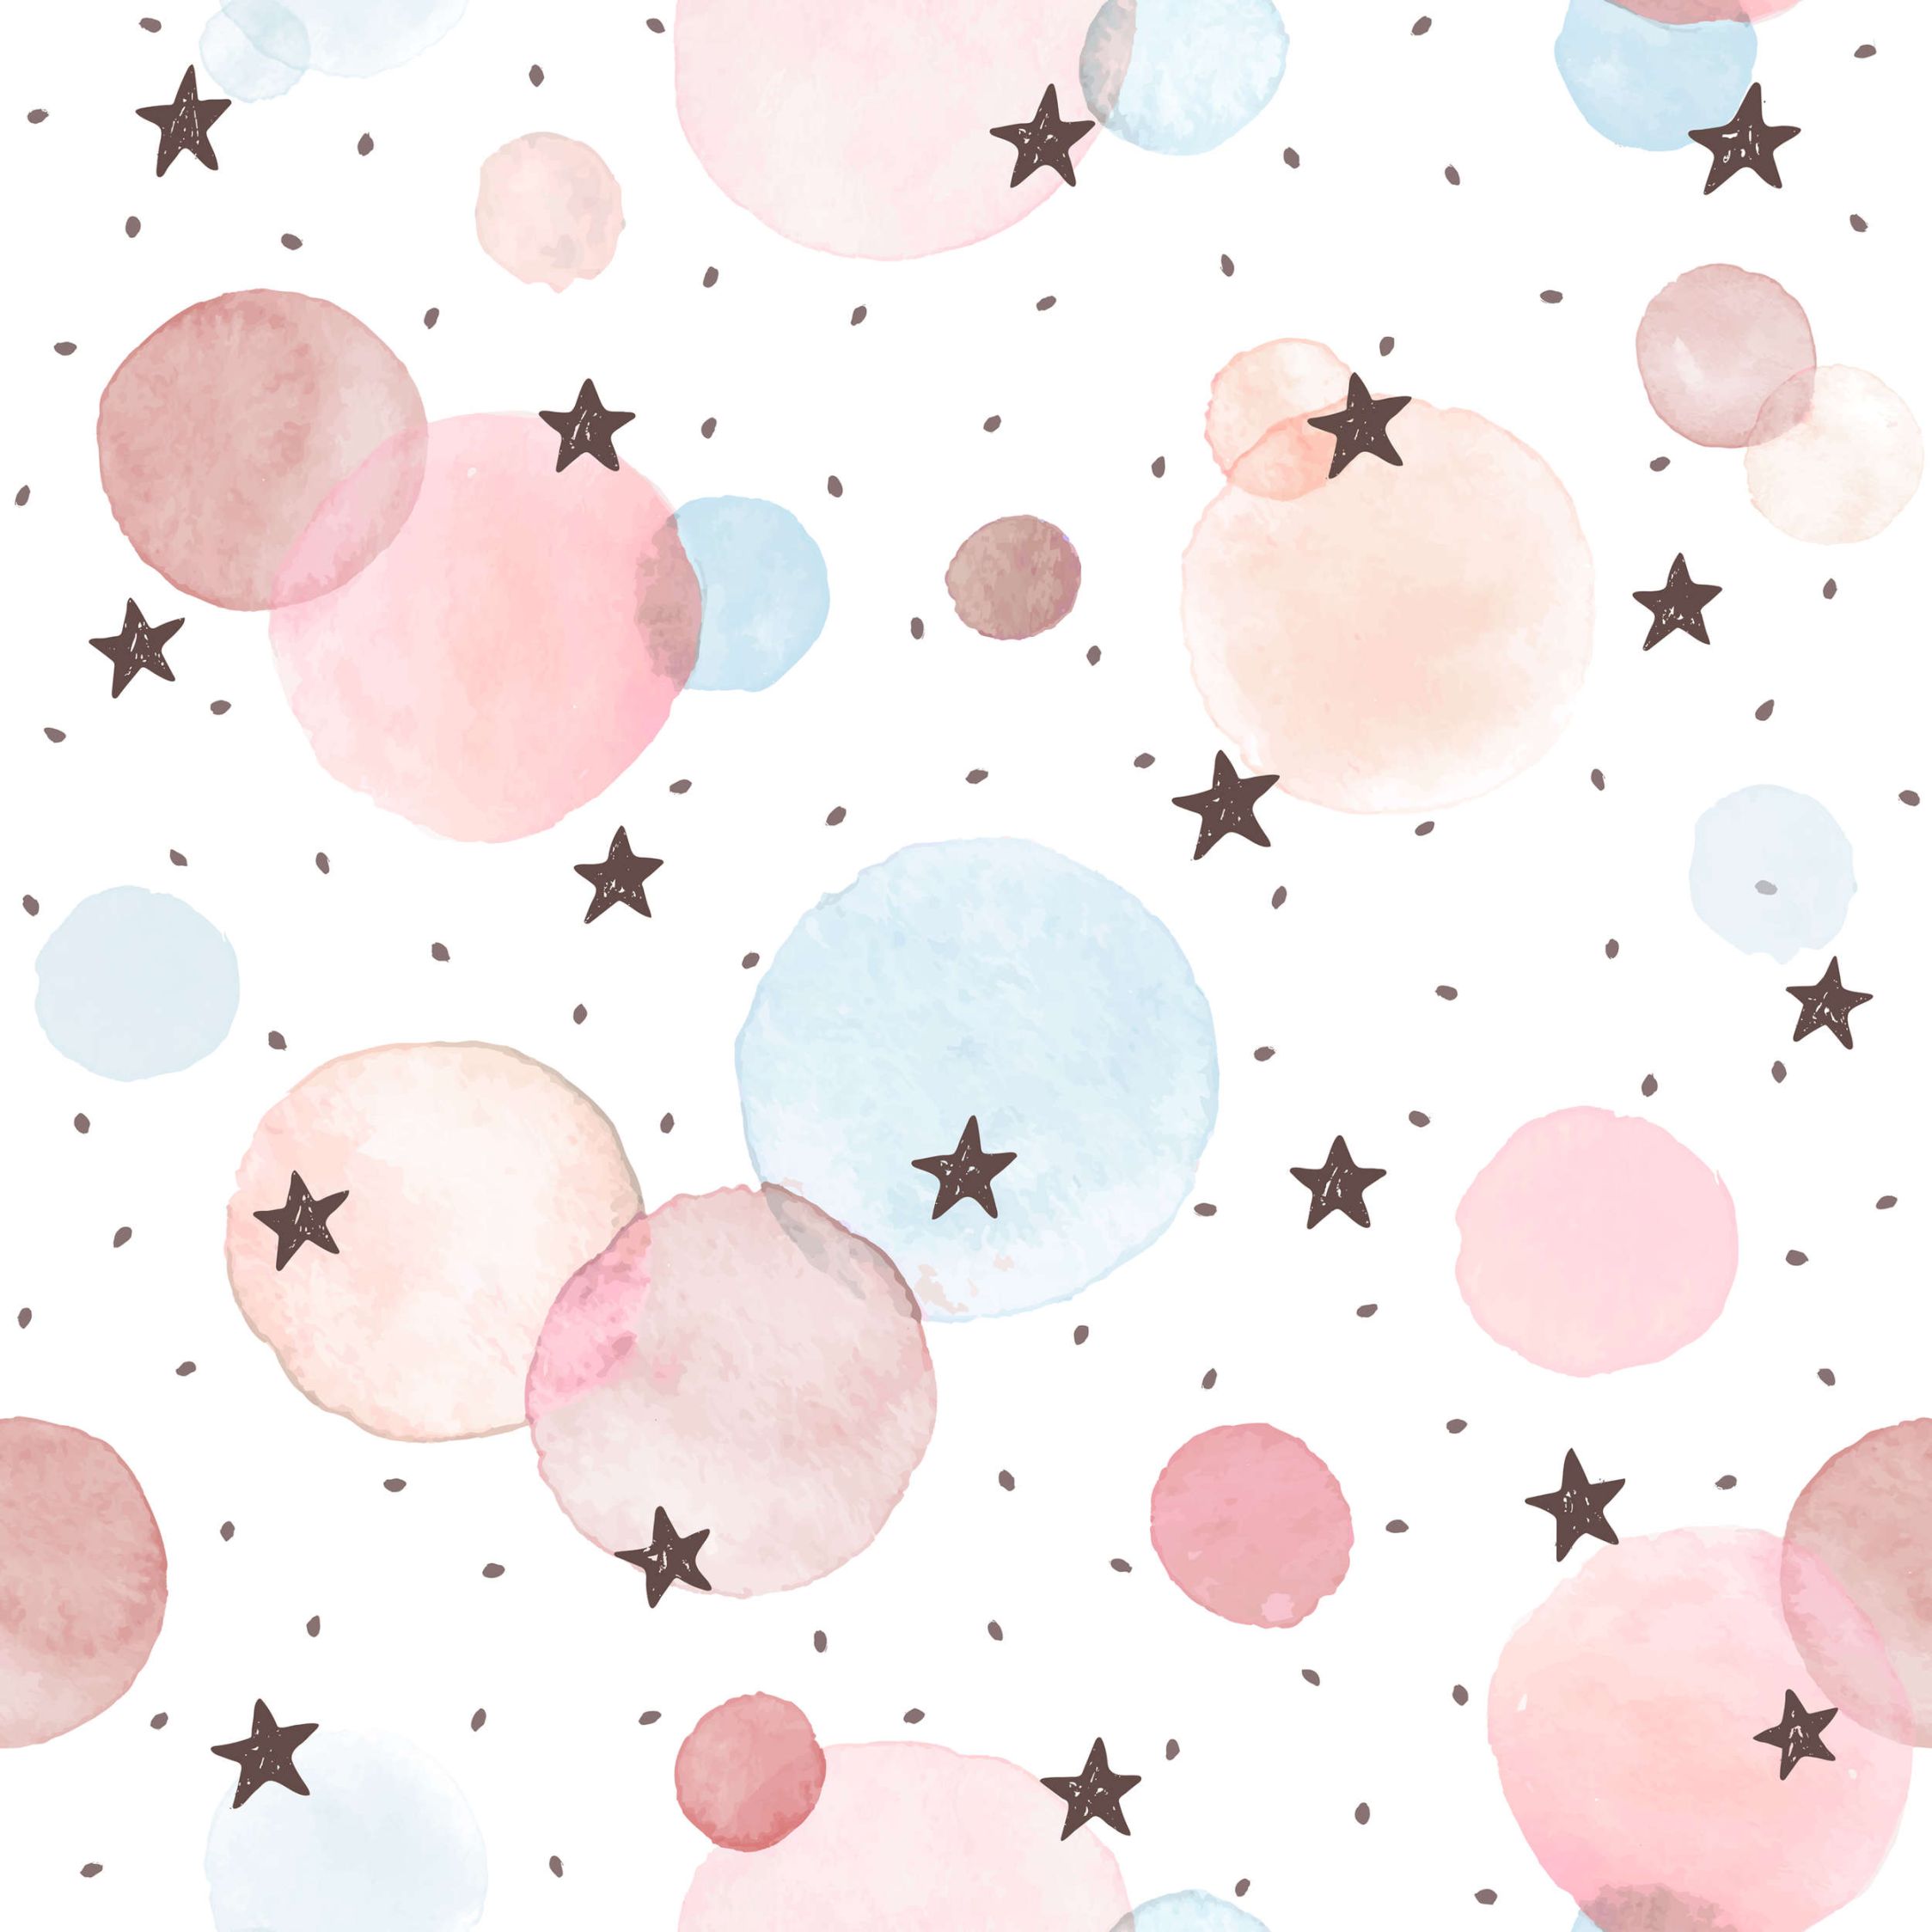             Fototapete fürs Kinderzimmer mit Sternen, Punkten und Kreisen – Glattes & mattes Vlies
        